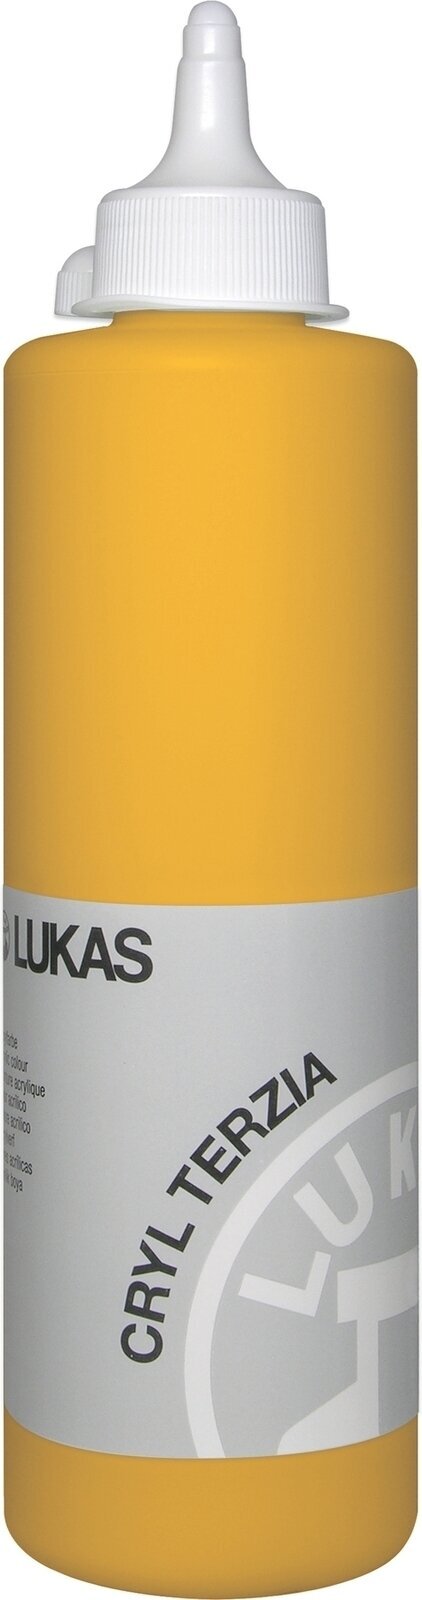 Peinture acrylique Lukas Cryl Terzia Acrylic Paint Plastic Bottle Peinture acrylique Indian Yellow 500 ml 1 pc